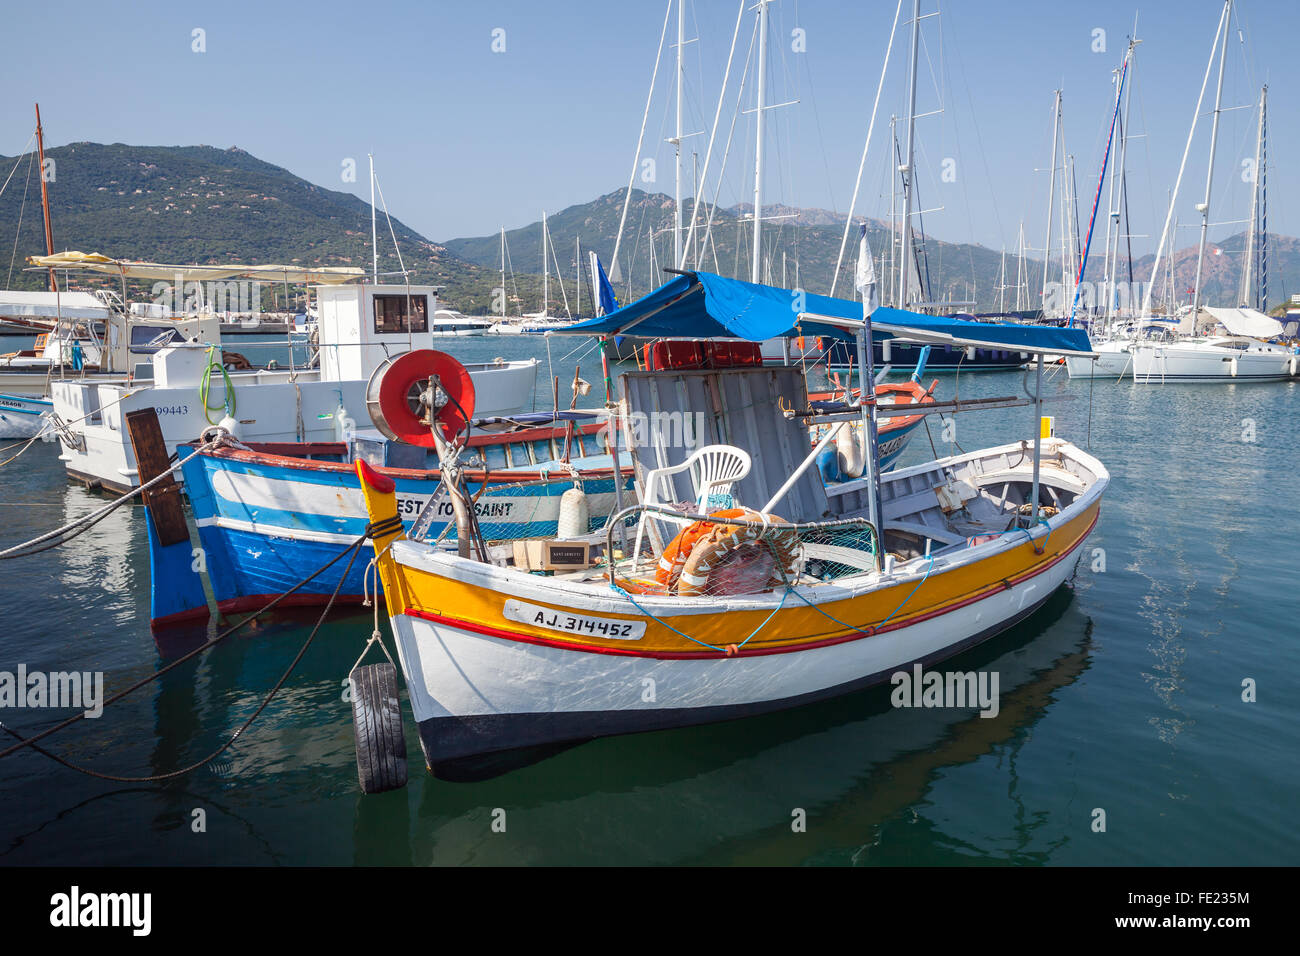 Propriano, France - le 3 juillet 2015 : Les petits bateaux de pêche en bois colorés amarrés dans station balnéaire de Propriano, Corse, France Banque D'Images